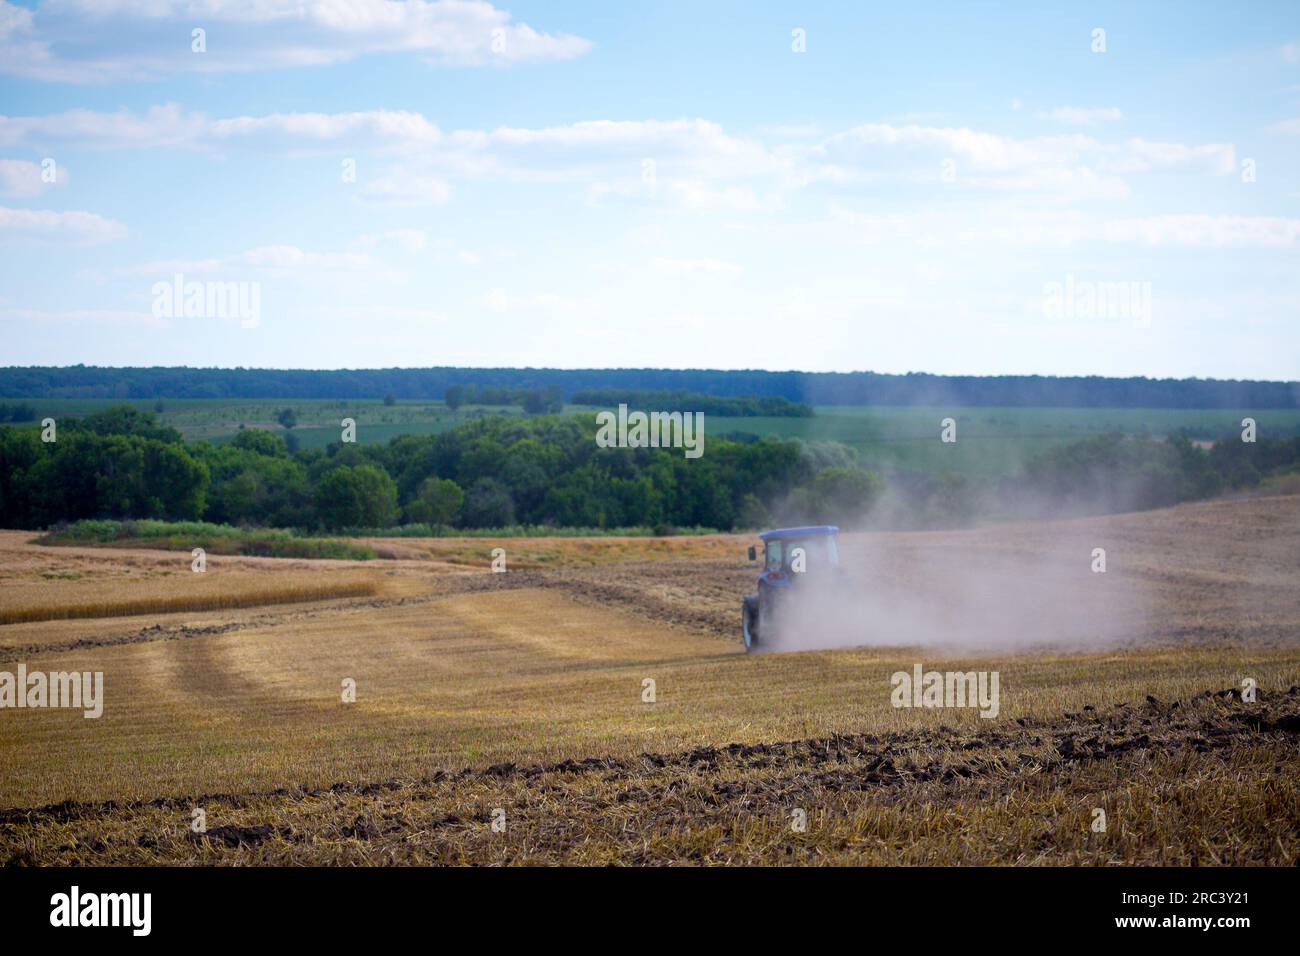 Ein moderner blauer Traktor mit einer gezogenen Scheibenegge und einer Walze pflügt ein Feld, auf dem das Frühjahrsgetreide gerade geerntet wurde. Mittsommer Stockfoto